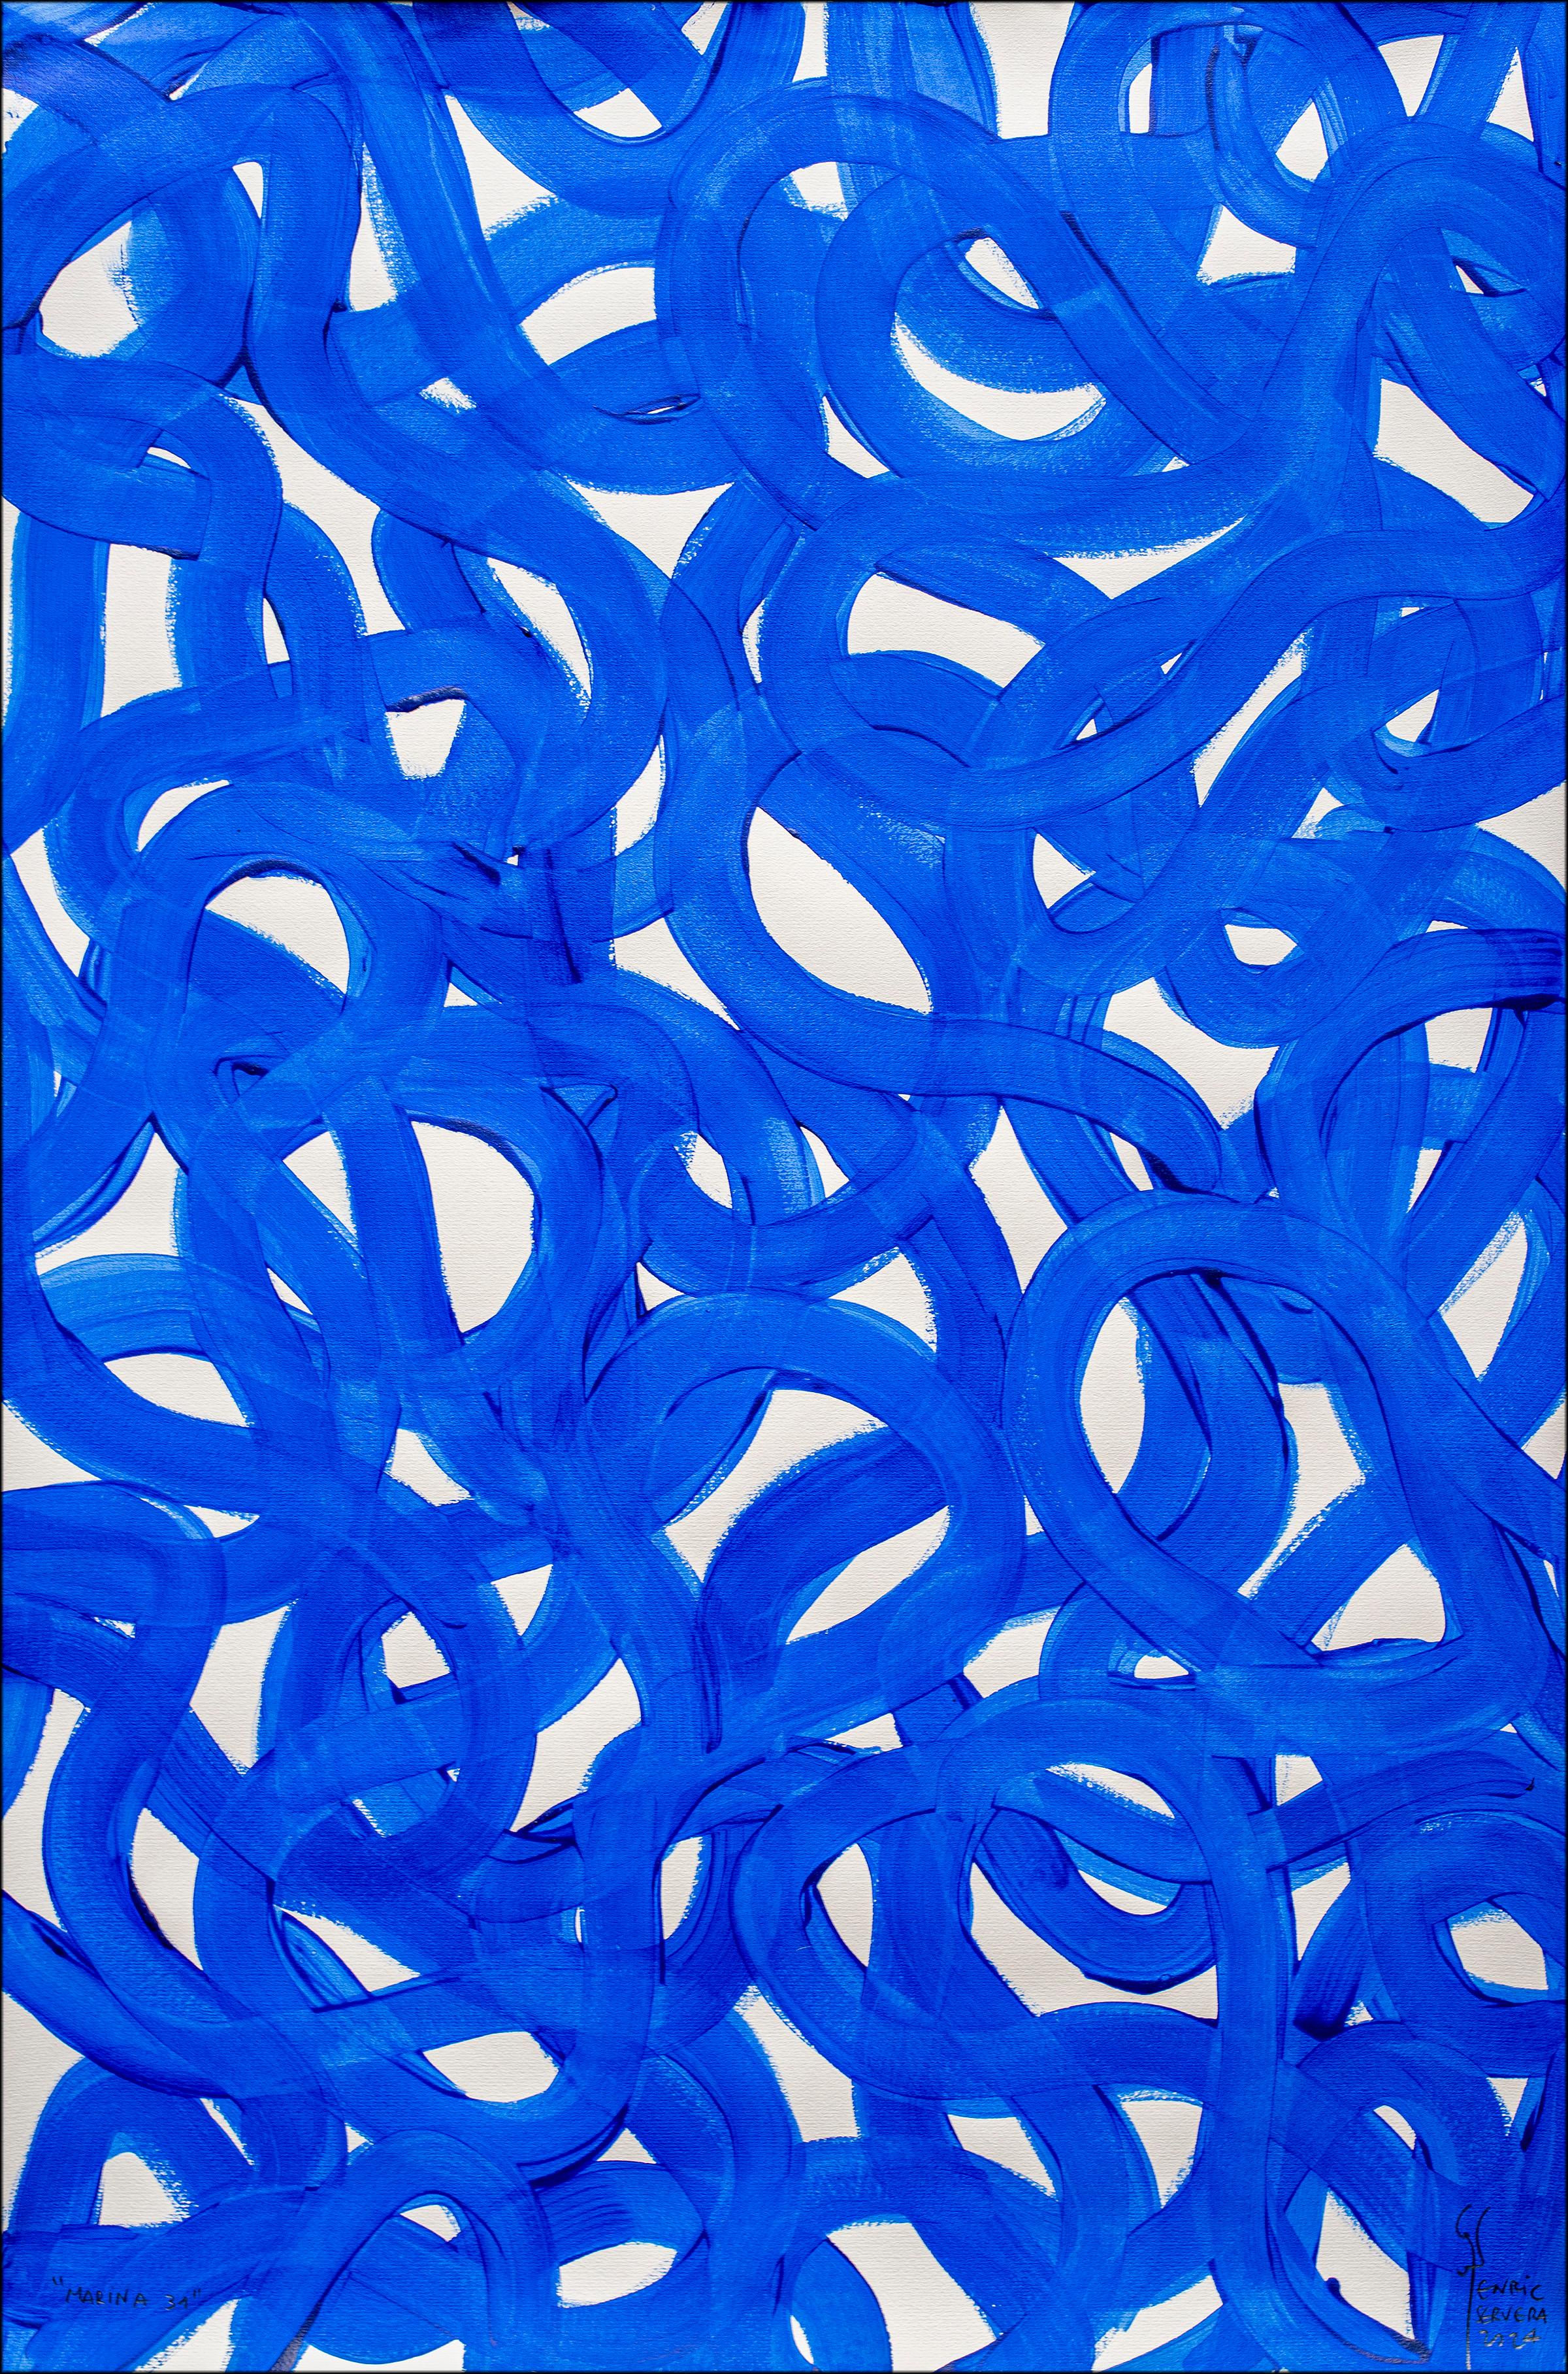 Blaue und weiße abstrakte, sich überlappende Fischschnipsel Gesten in Formen, Mittelmeerraum